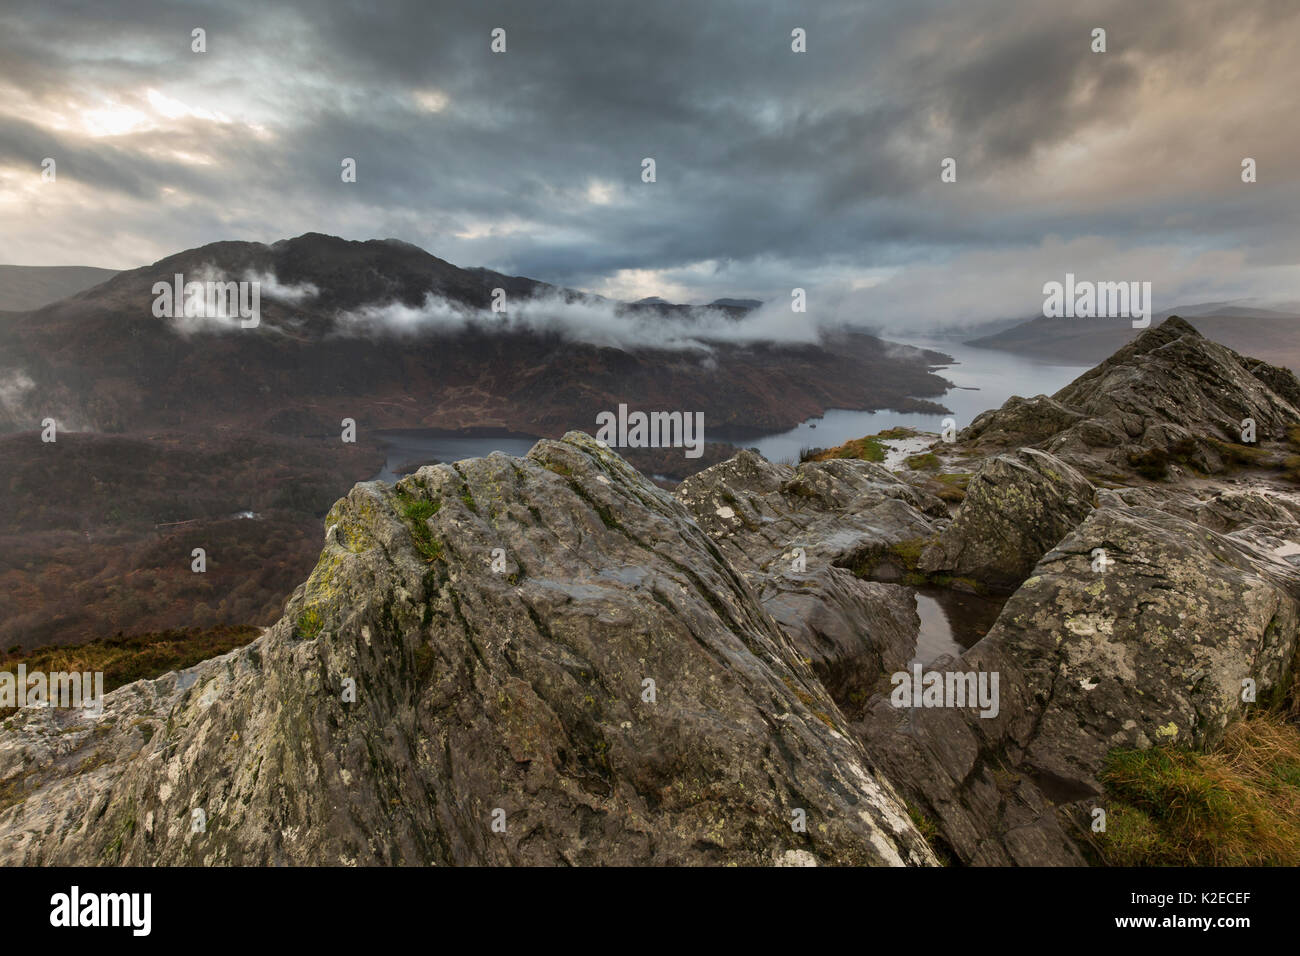 Avis de Ben A'une recherche sur le Loch Katrine, Loch Lommond & Parc National des Trossachs, Écosse, Royaume-Uni, novembre 2015. Banque D'Images